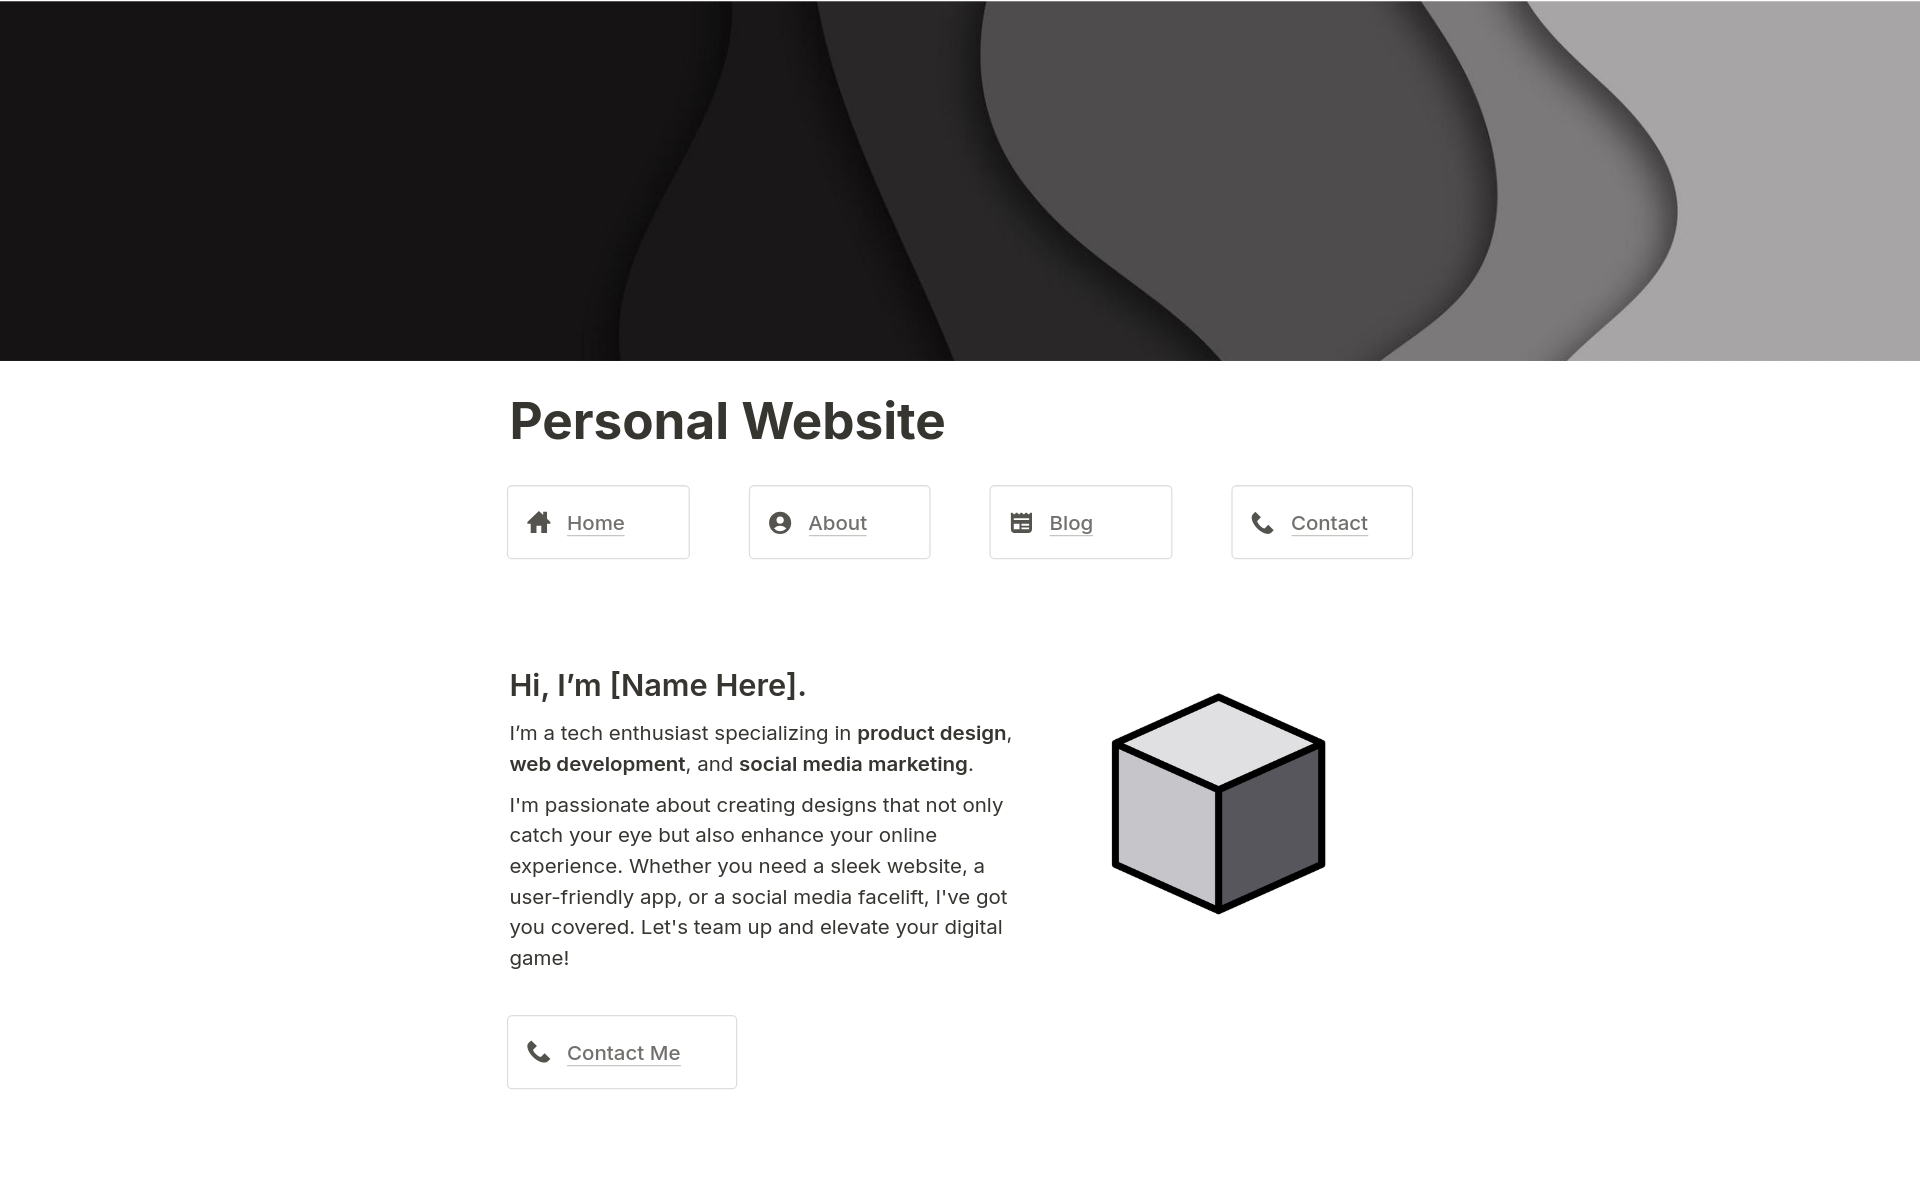 Vista previa de una plantilla para Personal Website